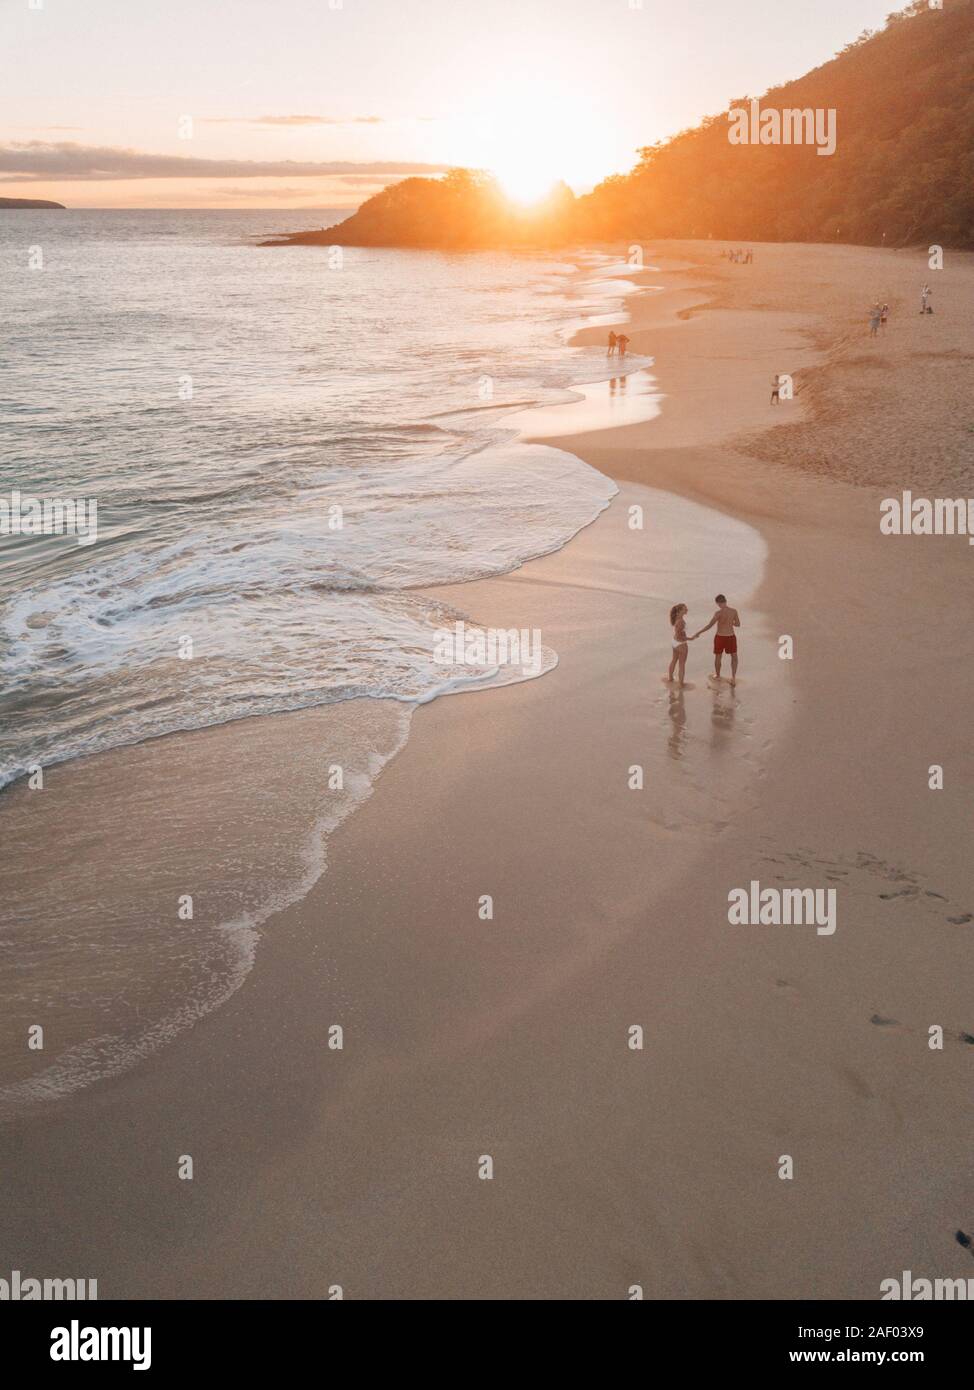 Ein Paar, das seine Flitterwochen verbringt, an einem Strand auf hawaii entlang läuft, während es den Sonnenuntergang genießt Stockfoto